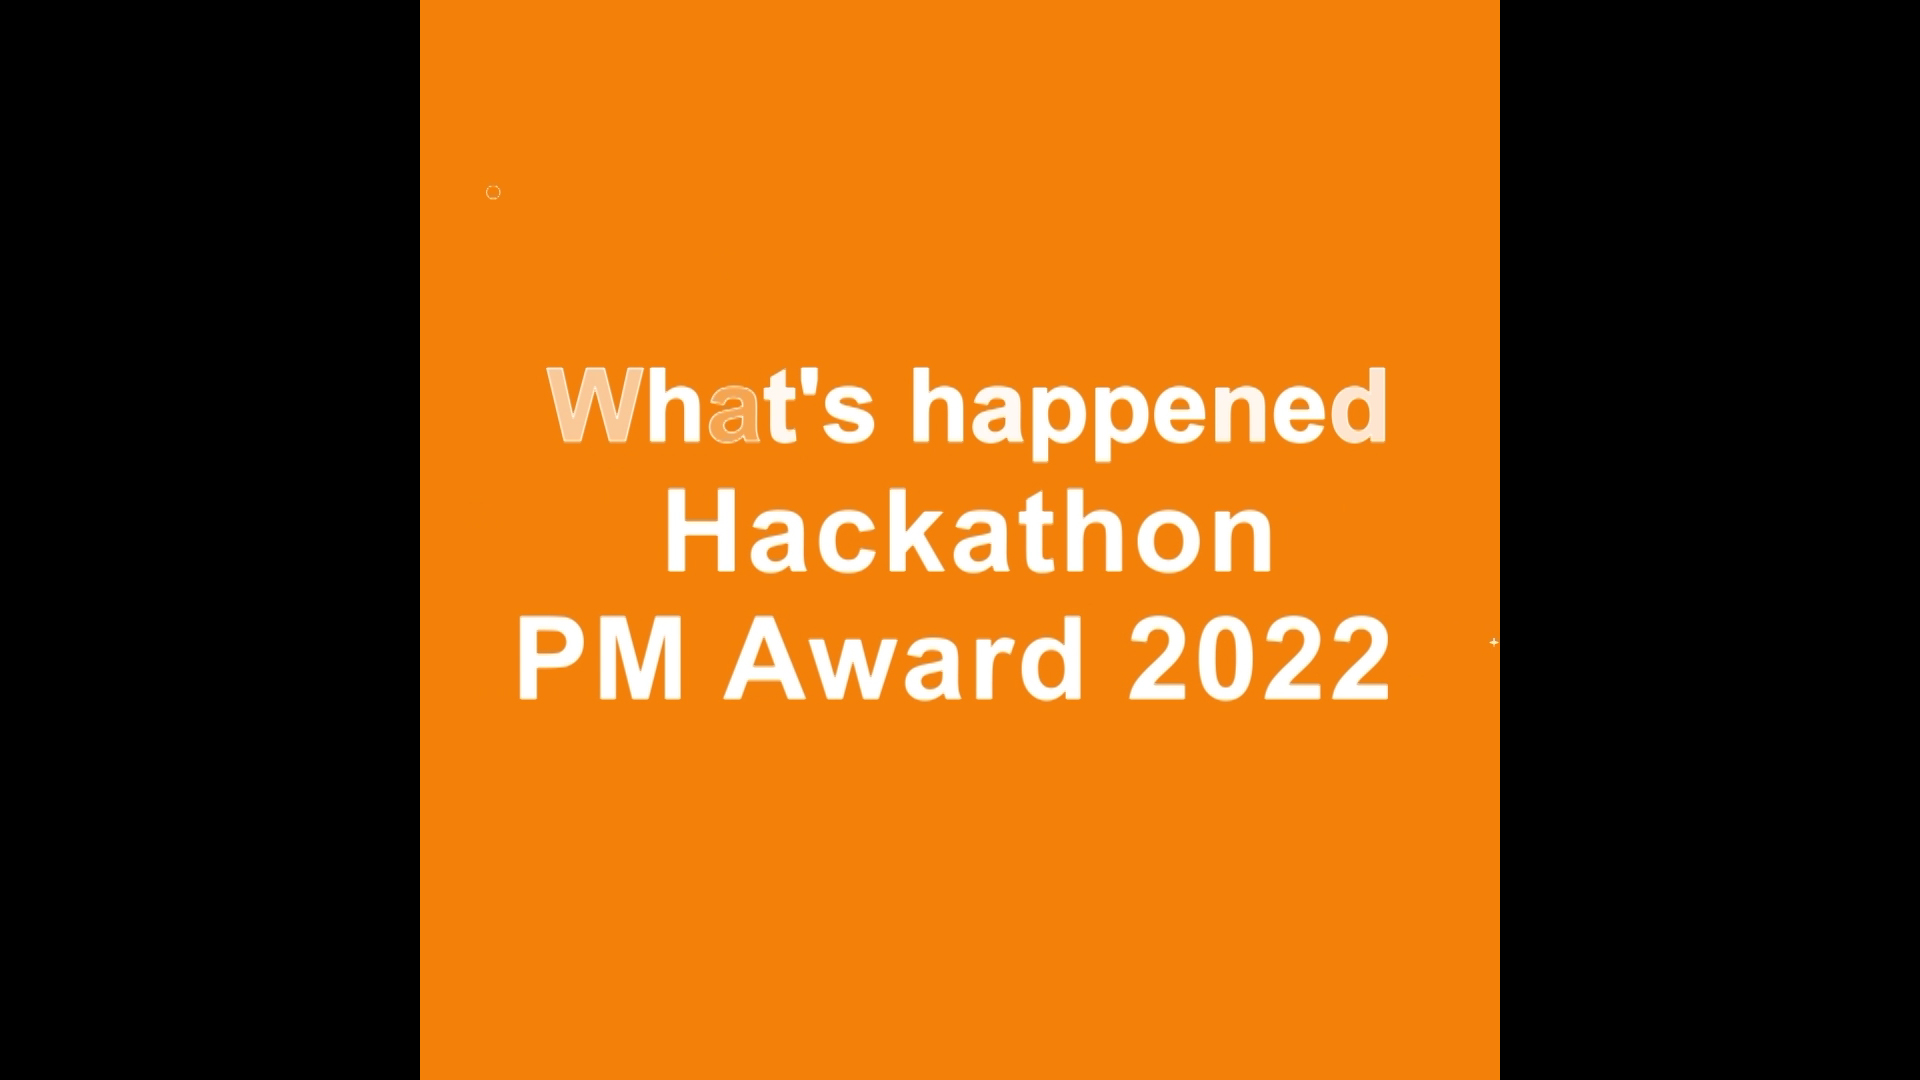 “Hackathon” ไอเดียคนรุ่นใหม่ สร้างสรรค์นวัตกรรมสร้างเสริมสุขภาพ